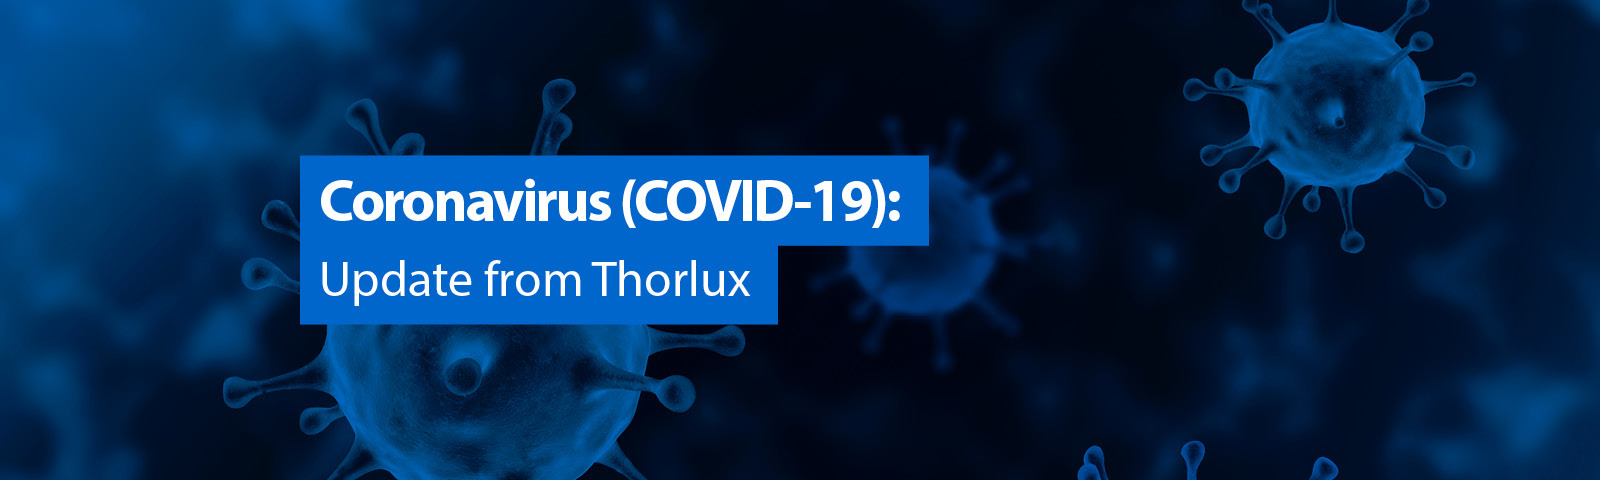 Coronavirus update from Thorlux